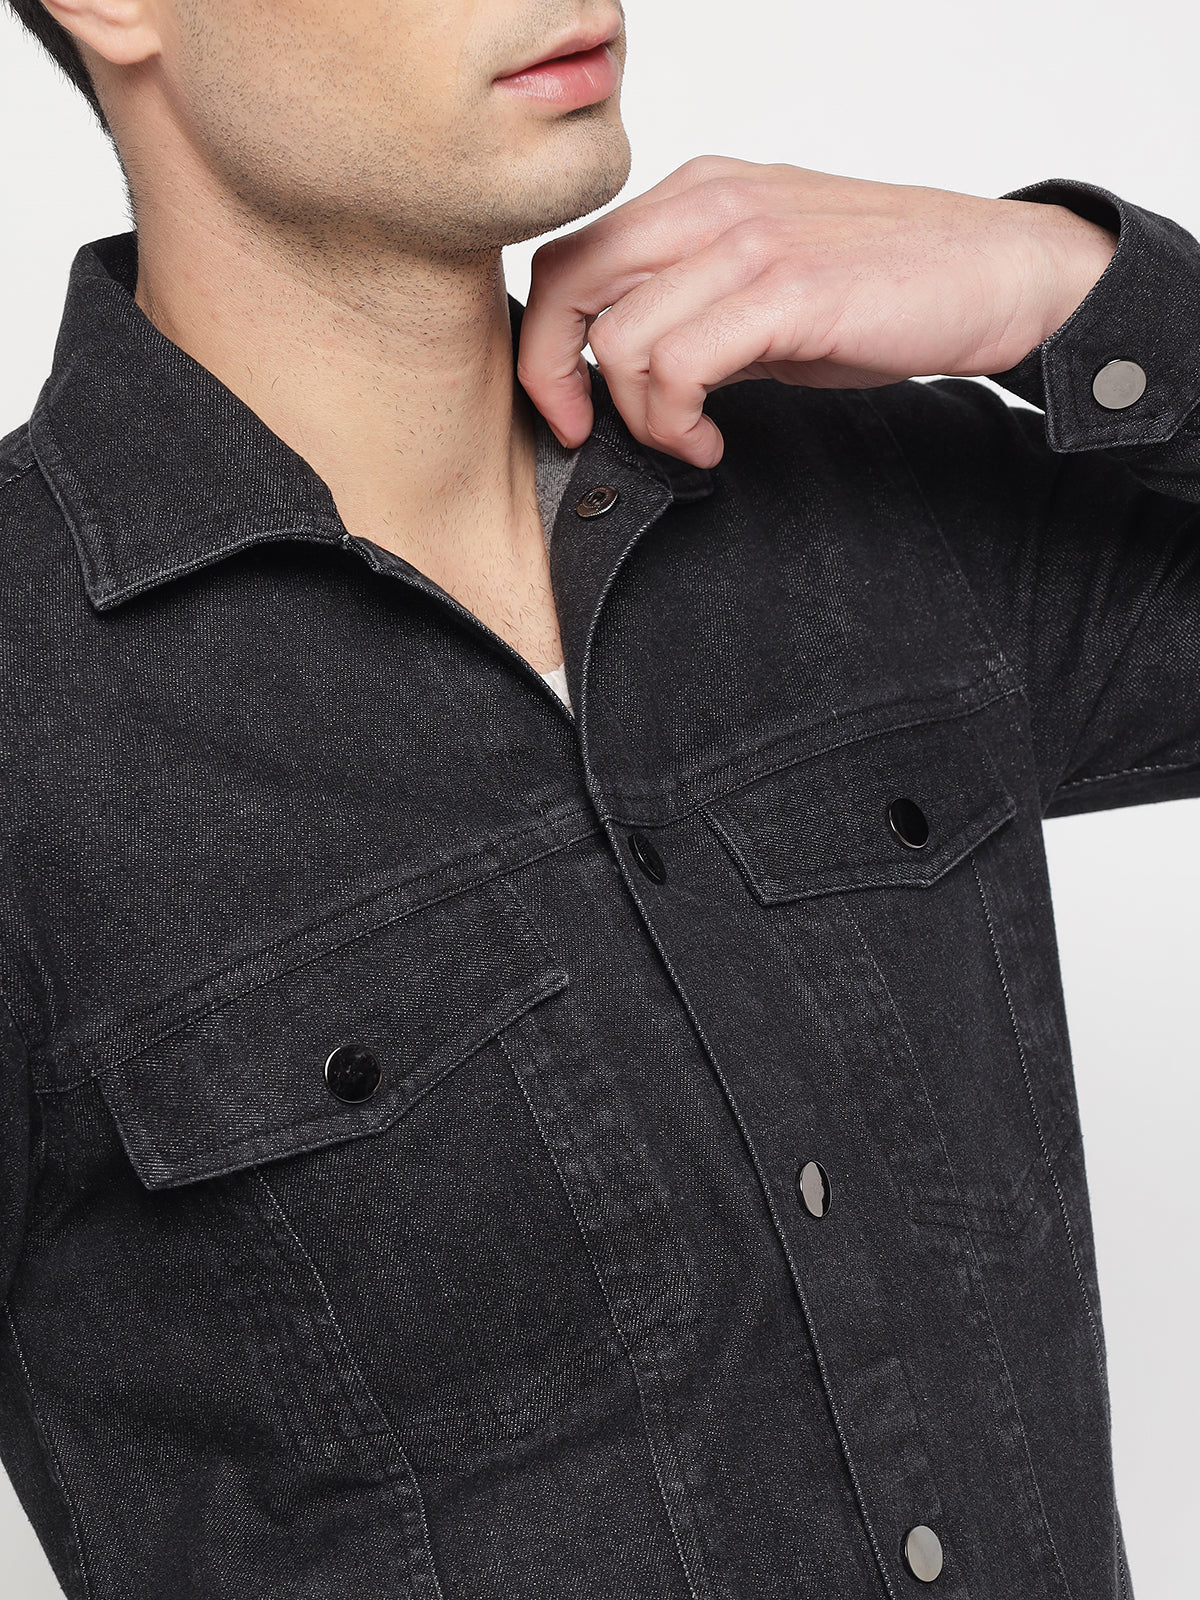 Represent Monogram-pattern Four-pocket Denim Jacket in Gray for Men